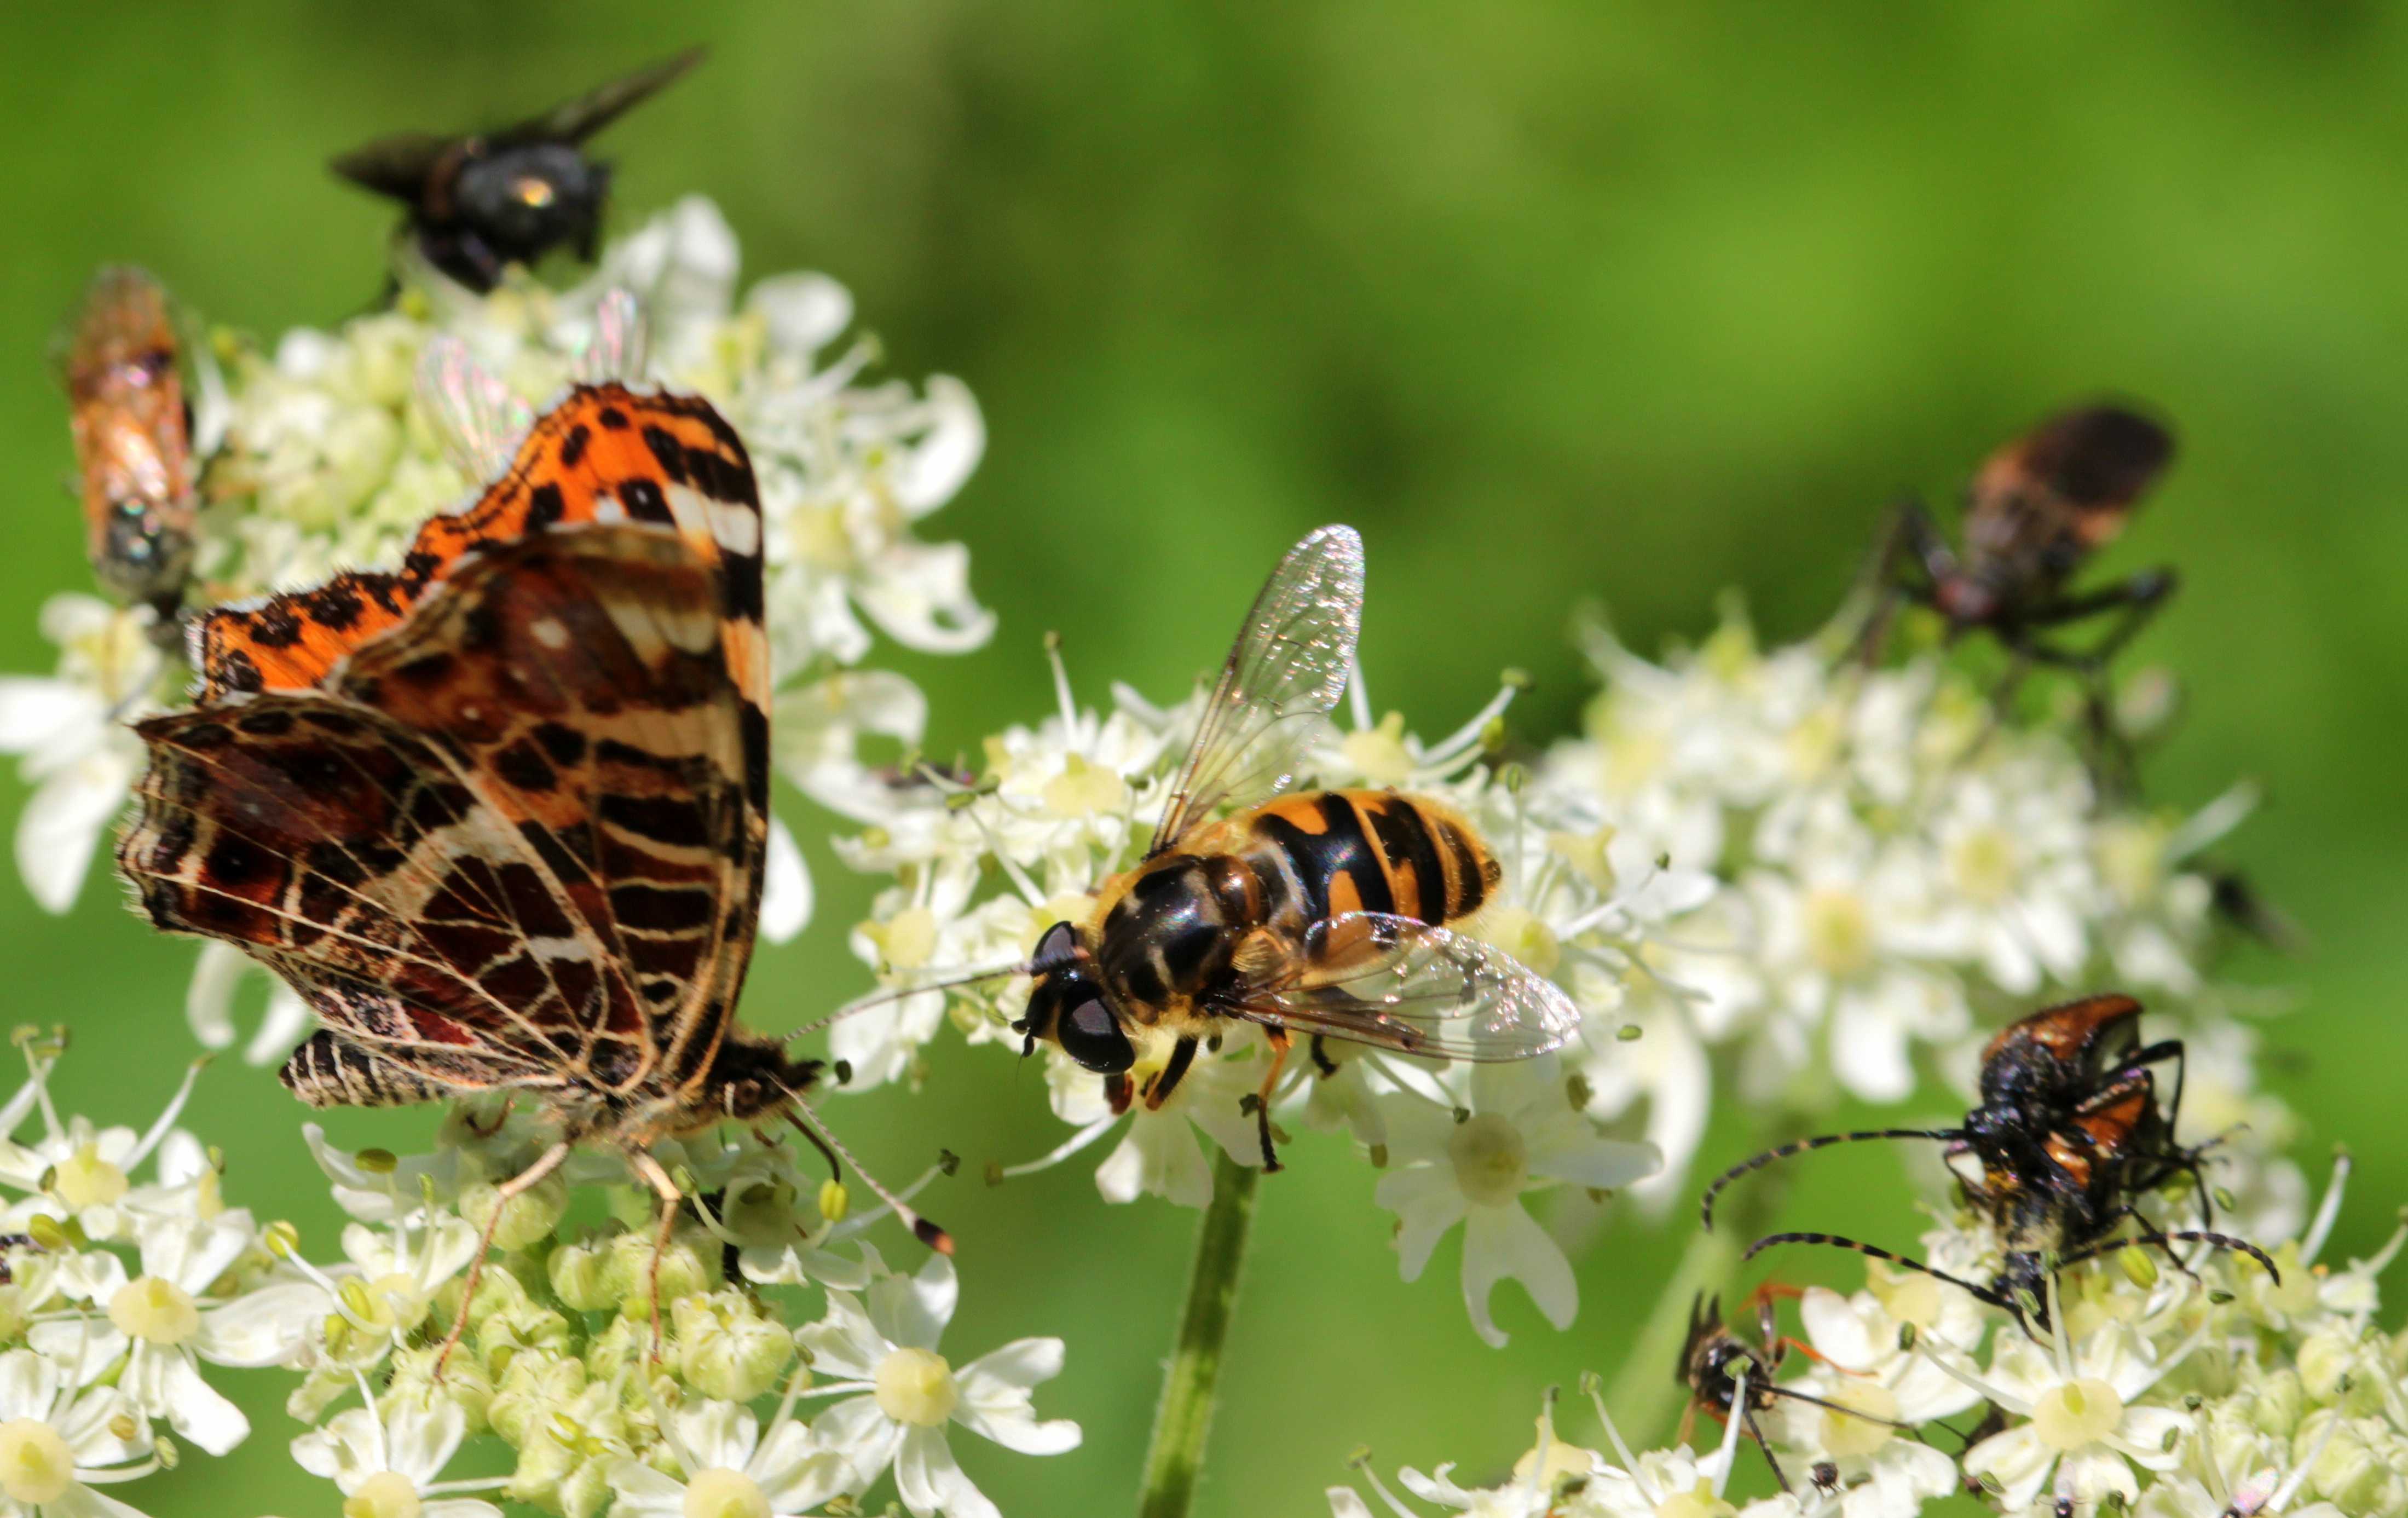 Тычинки и пестики помогают нам объяснить детям вопросы отношения полов Но и цветам часто необходима помощь в репродуктивном плане от птиц и пчел, не говоря уже о летучих мышах, бабочках, ящерицах и приматах Медоносным пчелам принадлежит большая часть слав